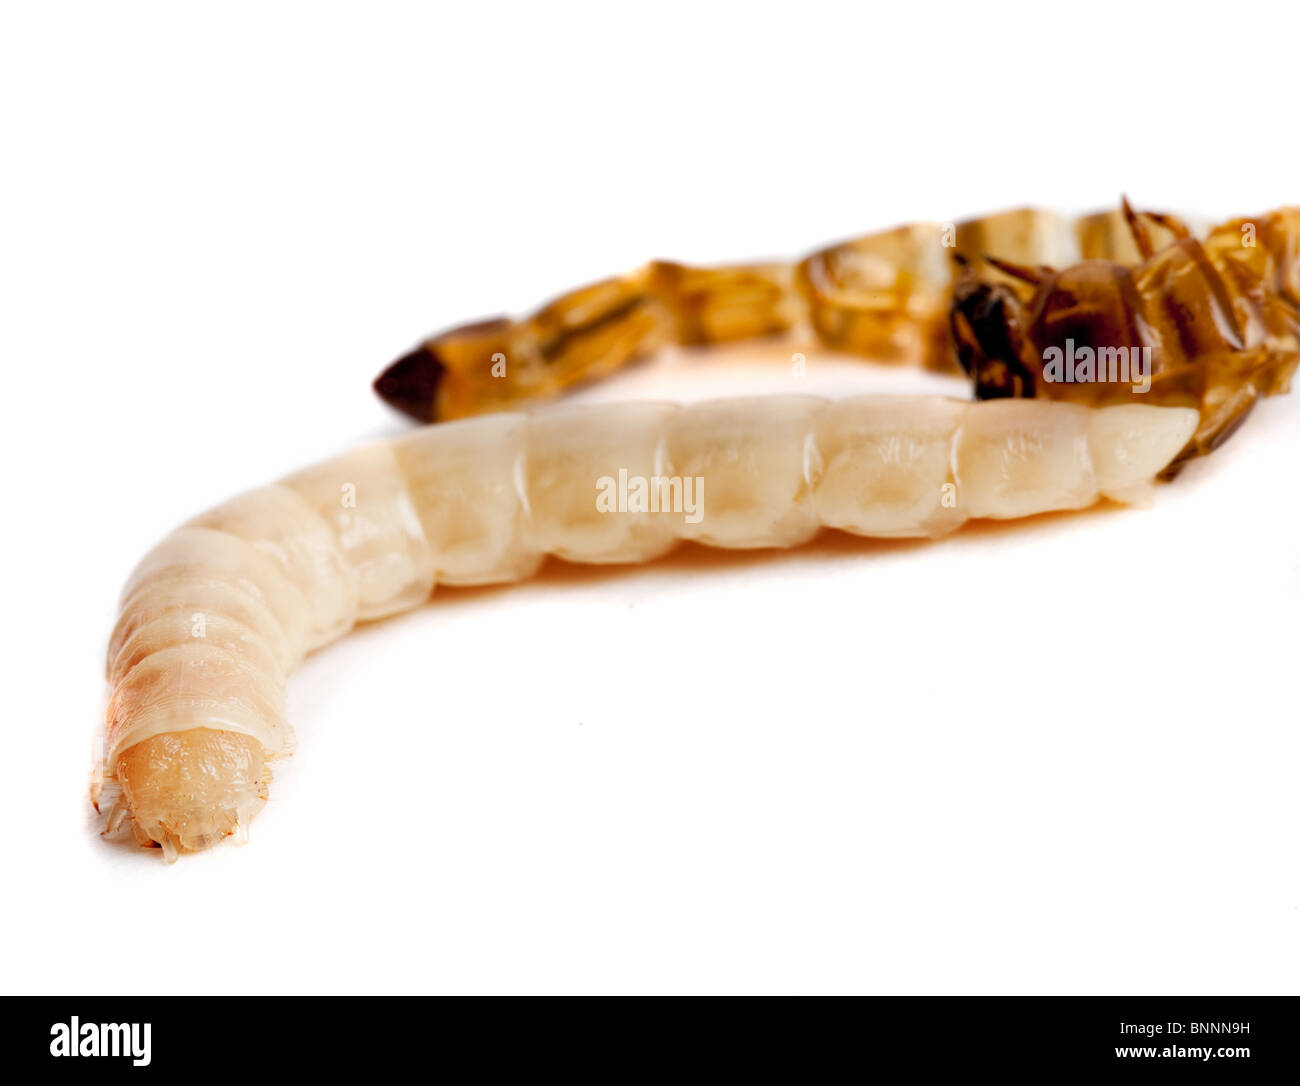 Aislados o gusano mealworm renacida después de arrojar su piel Foto de stock